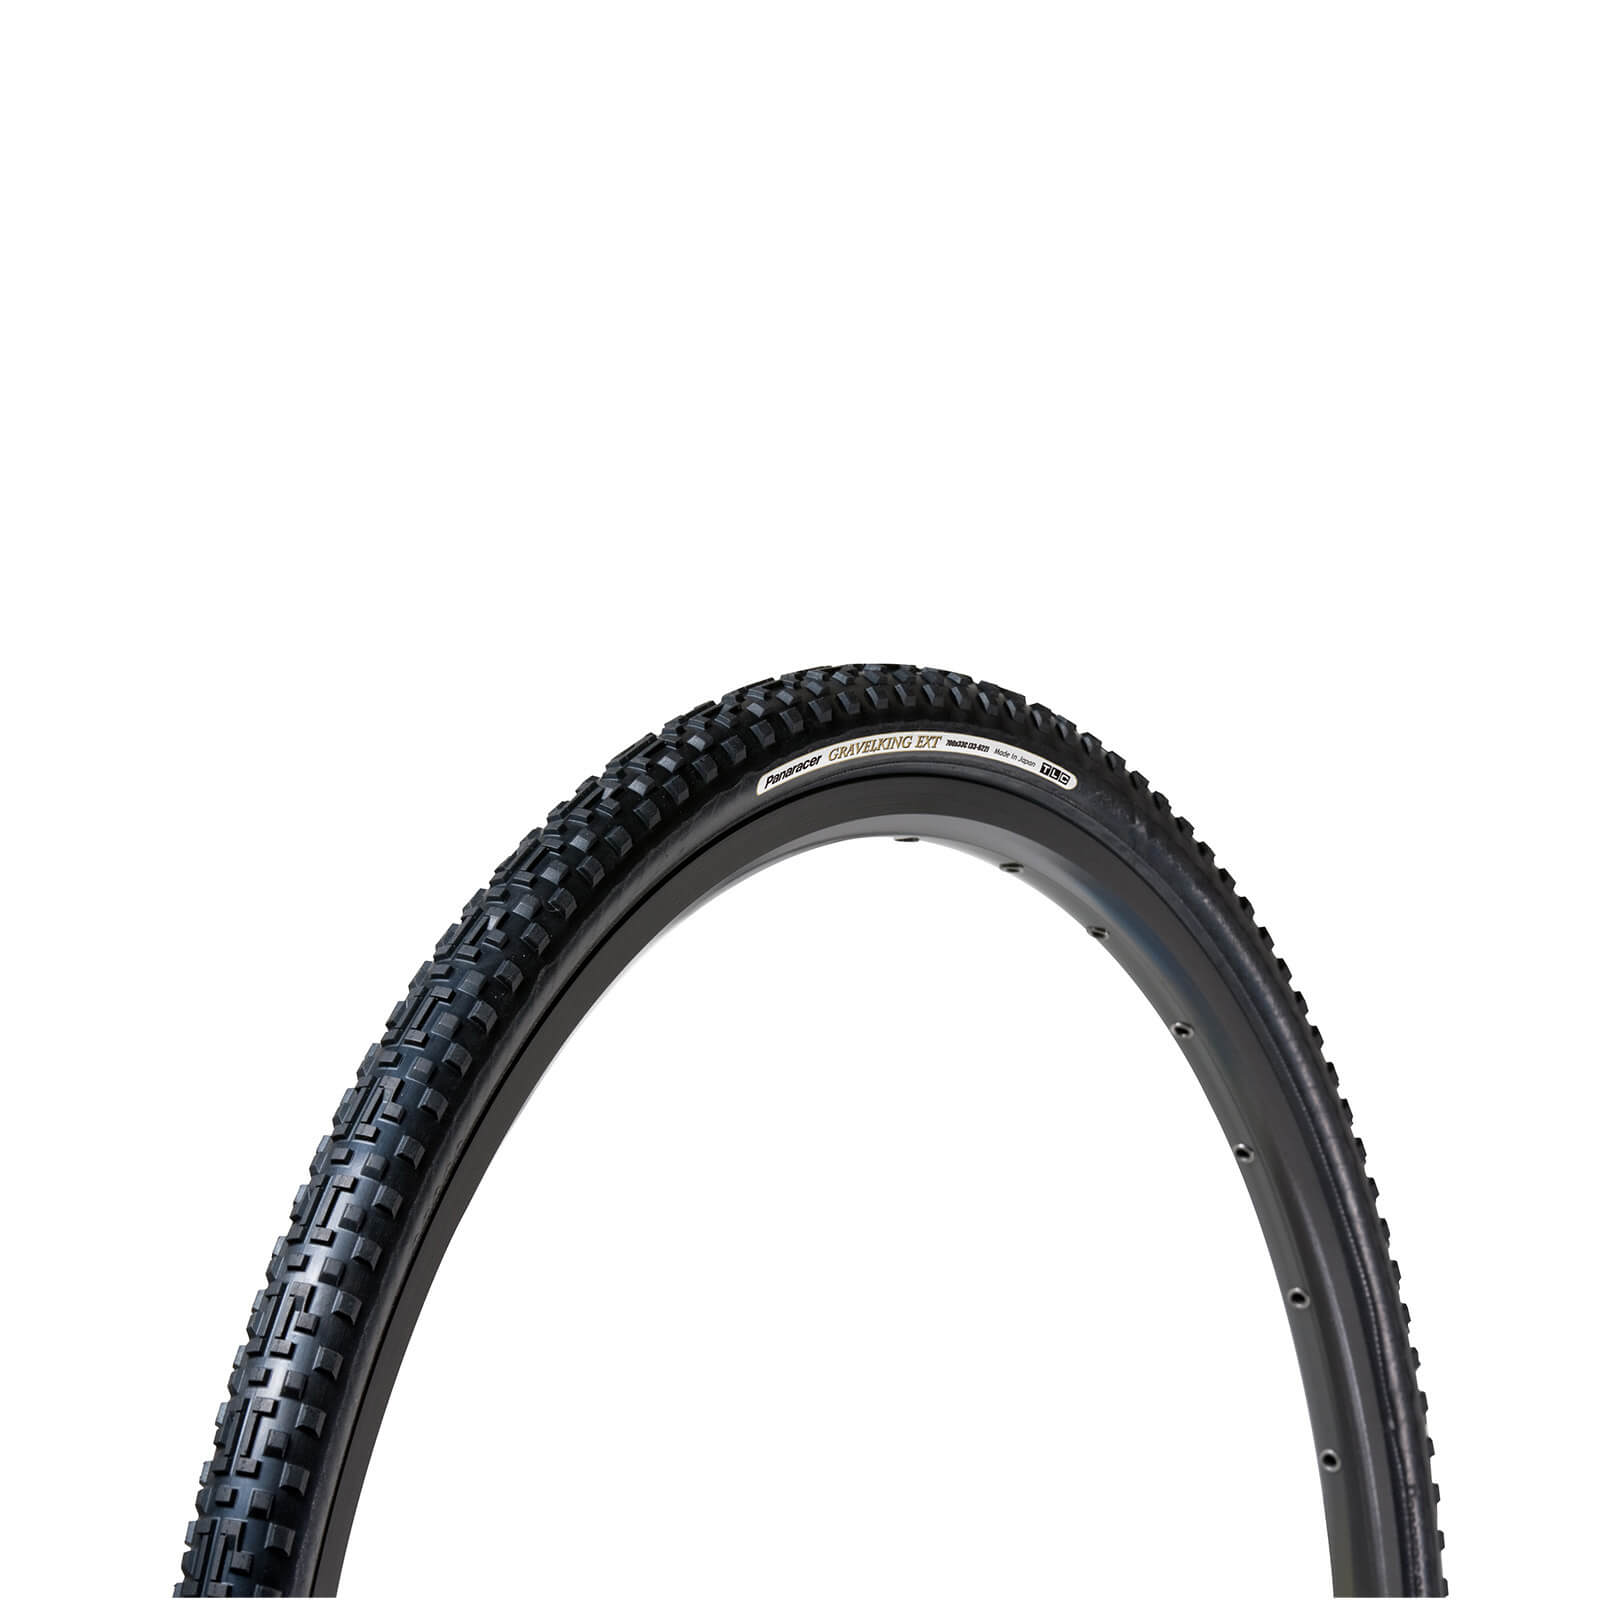 Panaracer Gravel King EXT Plus TLC Folding Gravel Tyre - 700 x 33c - BLACK/BLACK